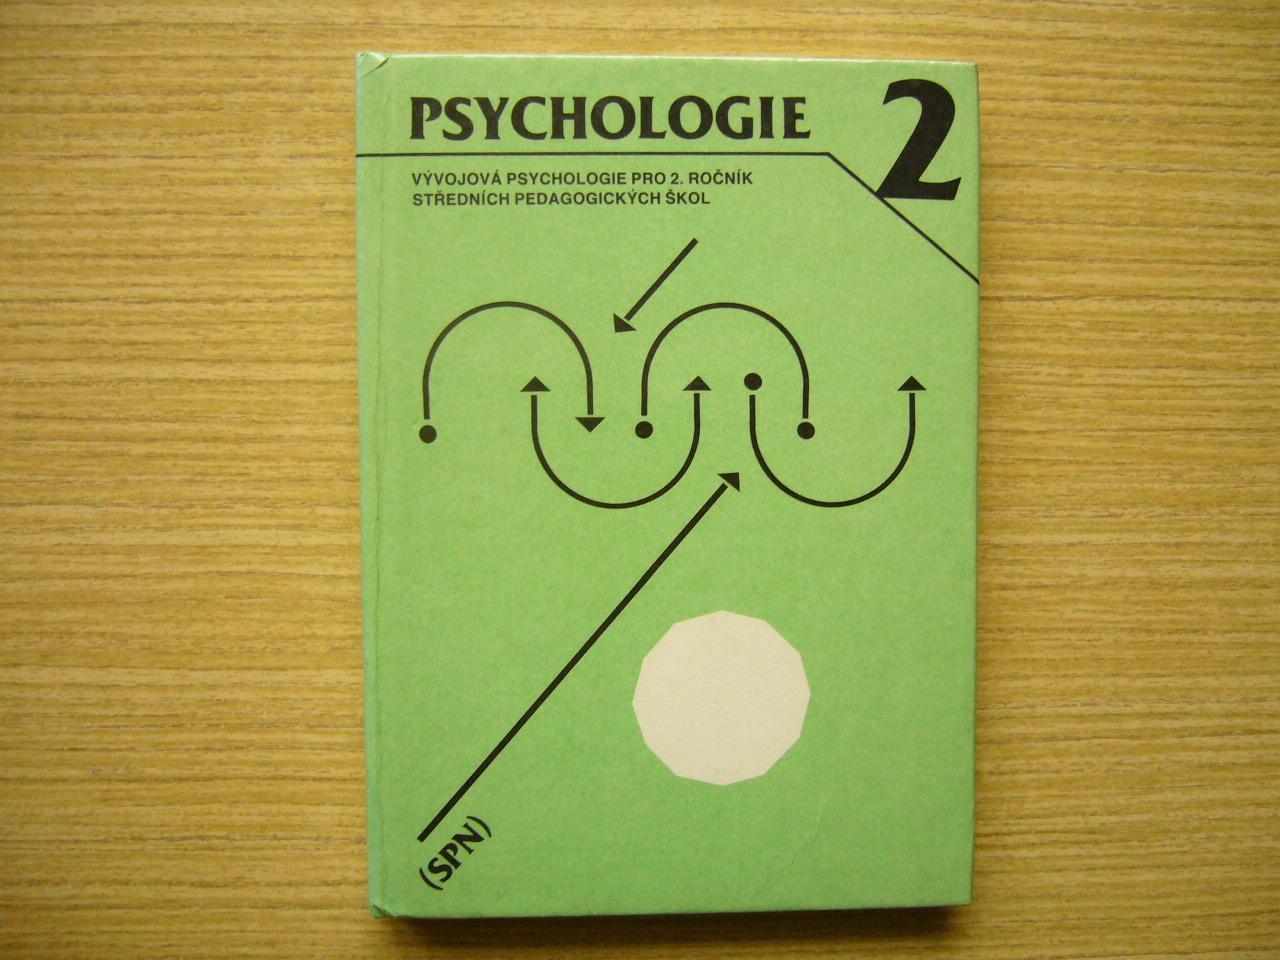 Klindová, Rybárová - Psychológia 2 |1986 -a - Knihy